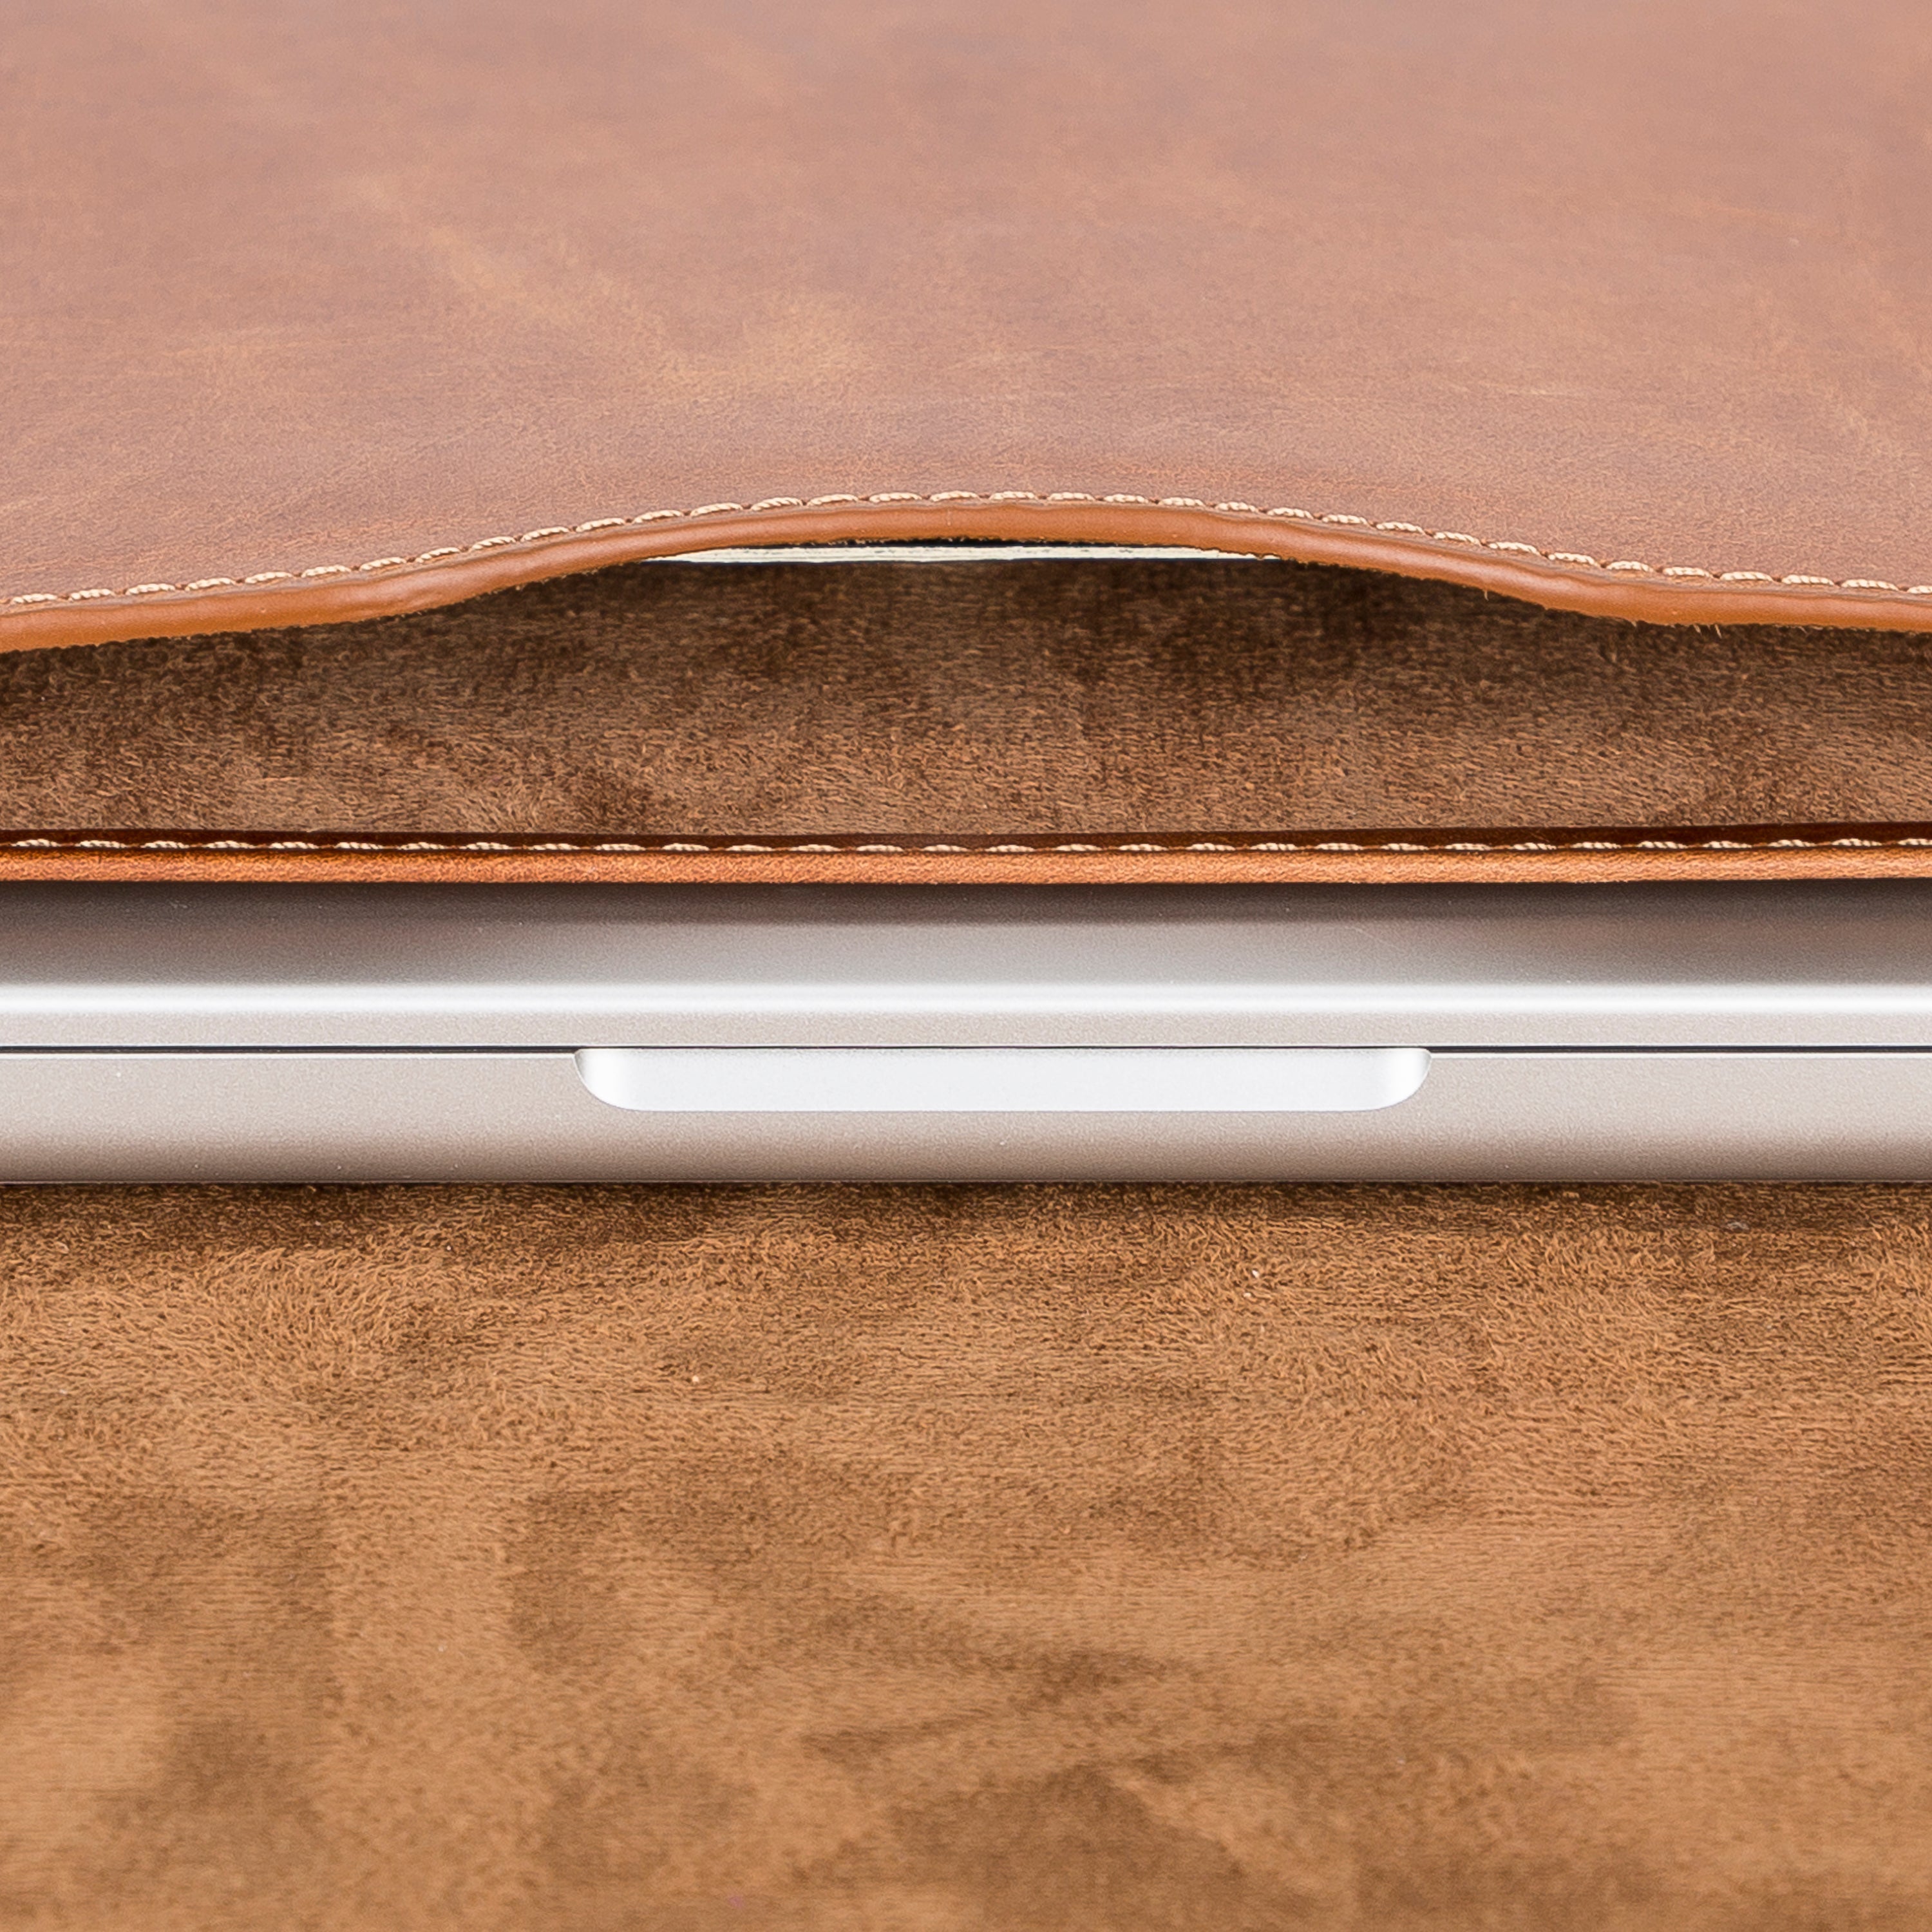 Leather Sleeve for MacBook Pro / Laptops Bayelon